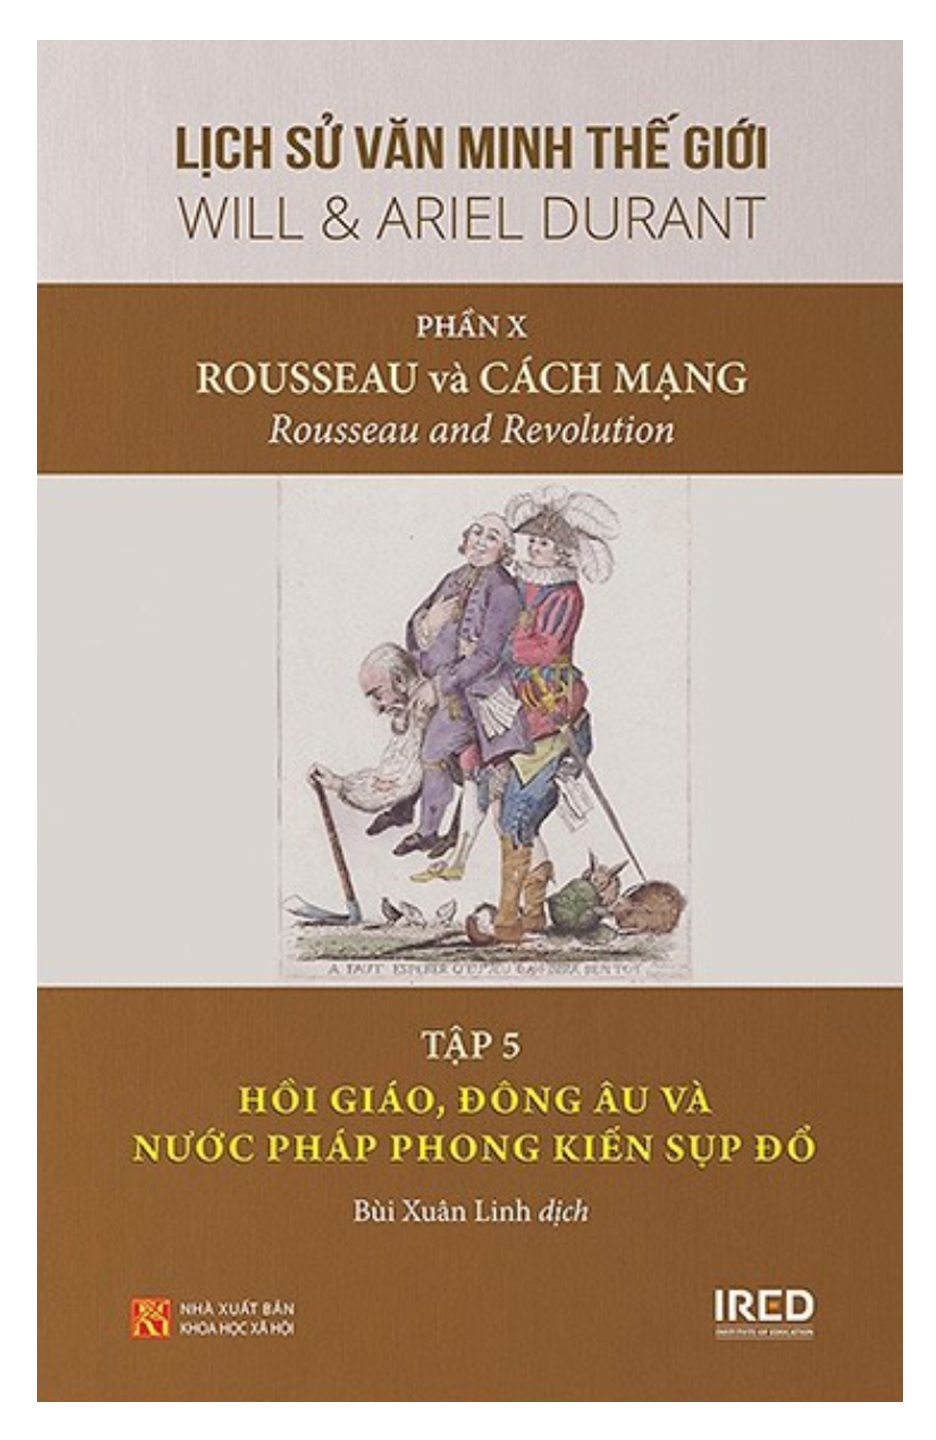 Lịch Sử Văn Minh Thế Giới(Phần X)-Rousseau Và Cách Mạng-Tập 5: Hồi Giáo, Đông Âu Và Nước Pháp Phong Kiến Sụp Đổ.